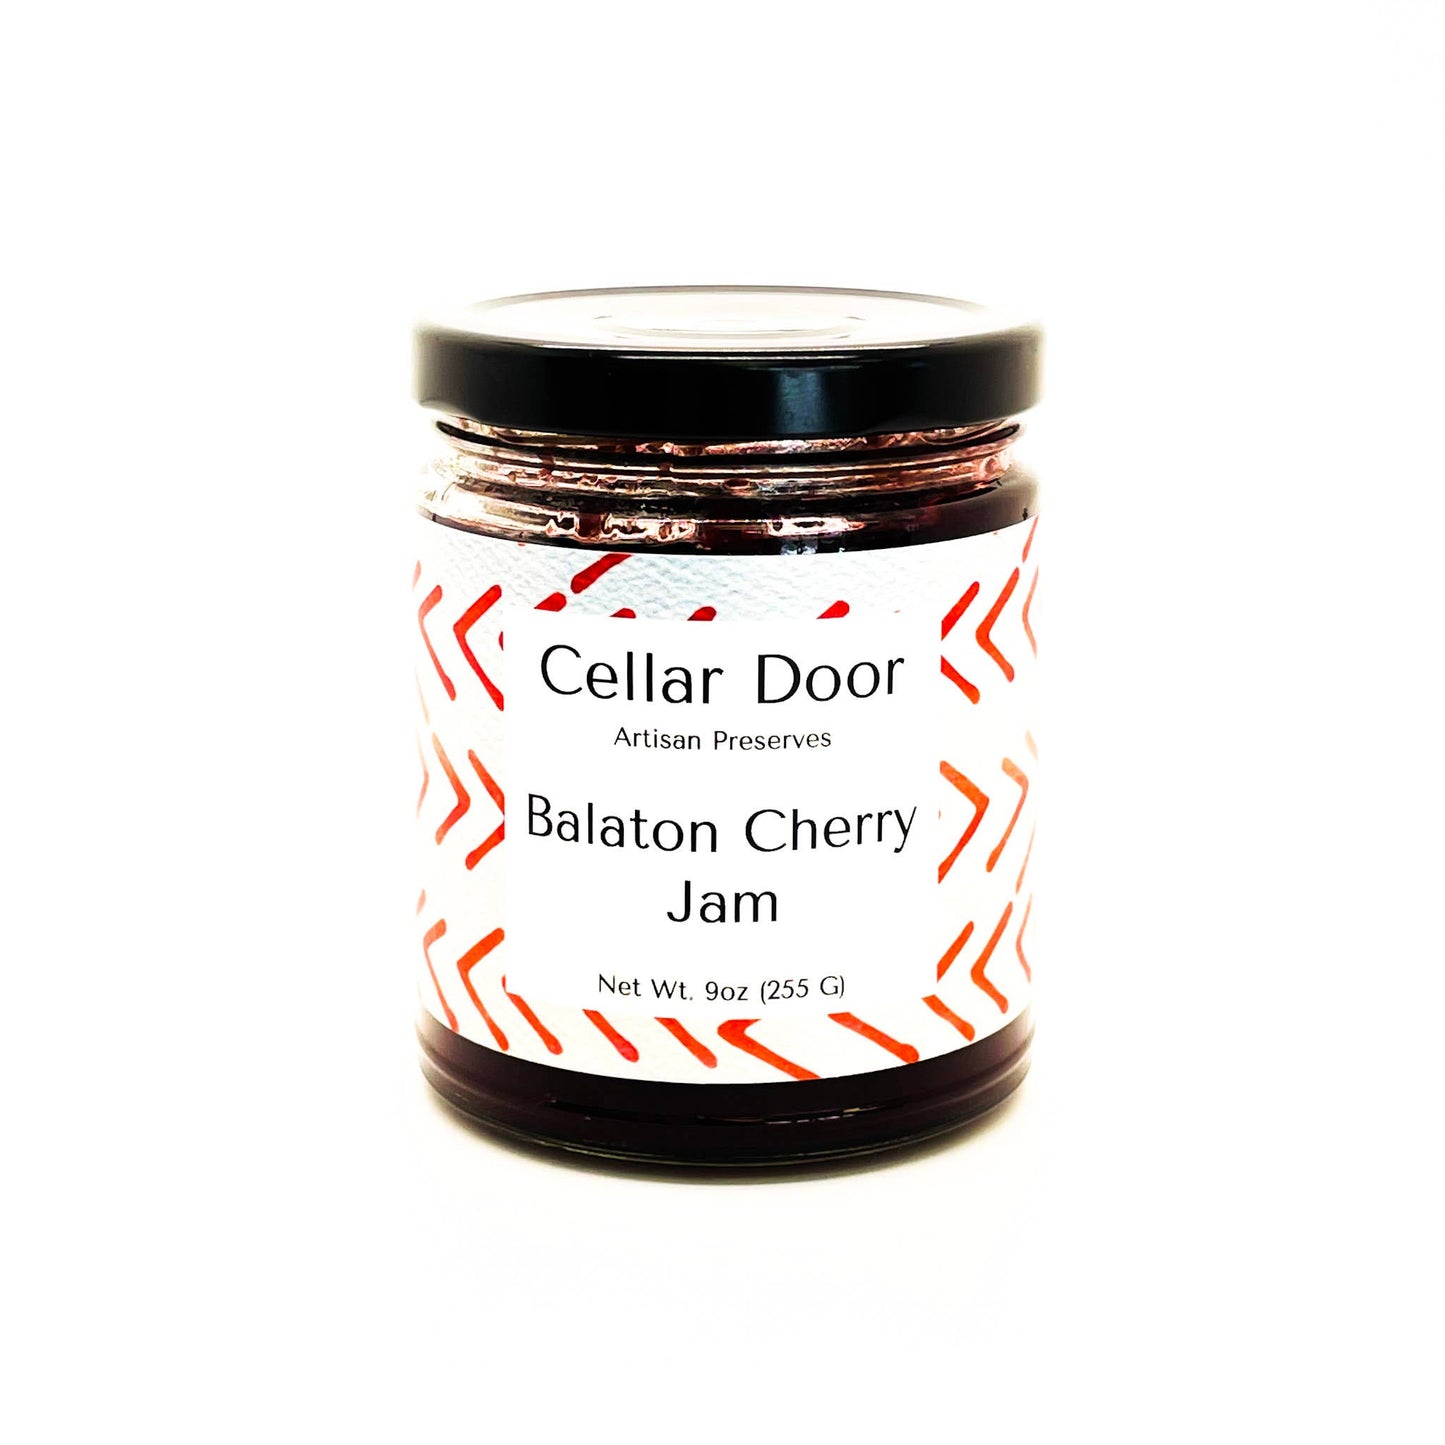 Cellar Door Balaton Cherry Jam, 255g/9oz